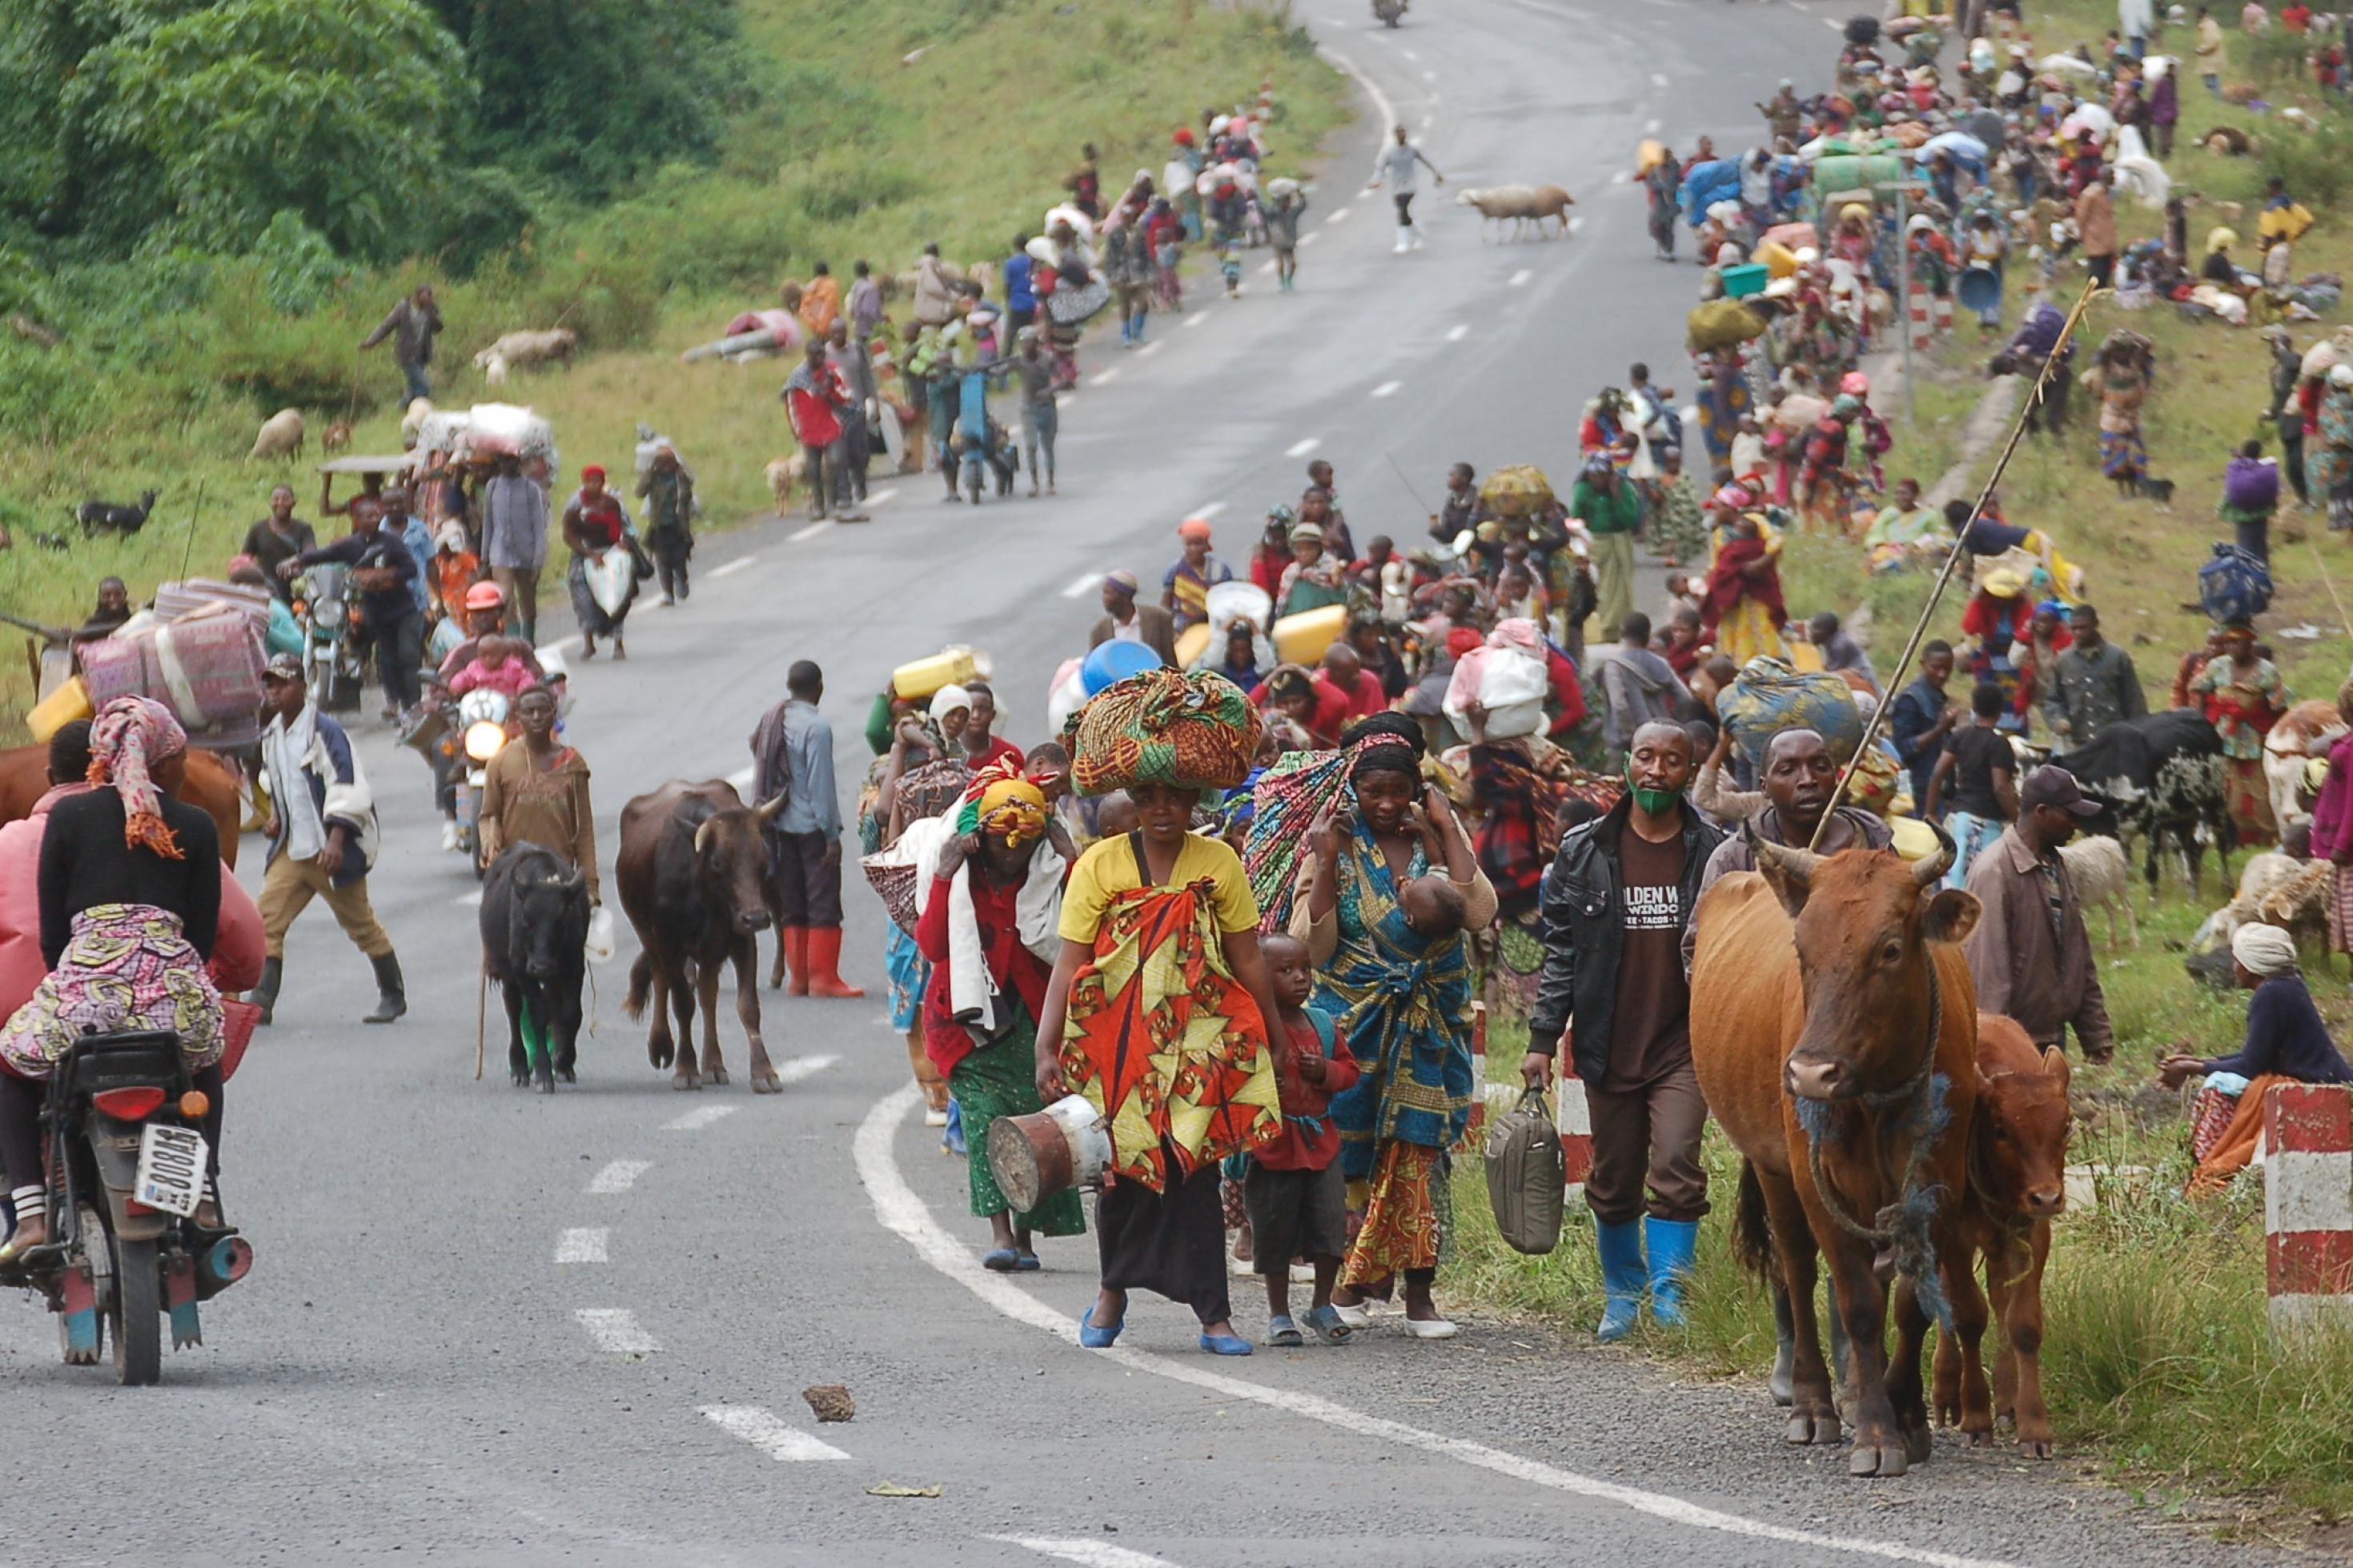 Zu sehen ist eine Asphaltstraße, darauf viele Menschen, die zu Fuß fliehen. Etliche haben ihre Rinder oder Schafe dabei, andere tragen Matratzen und andere Besitztümer.